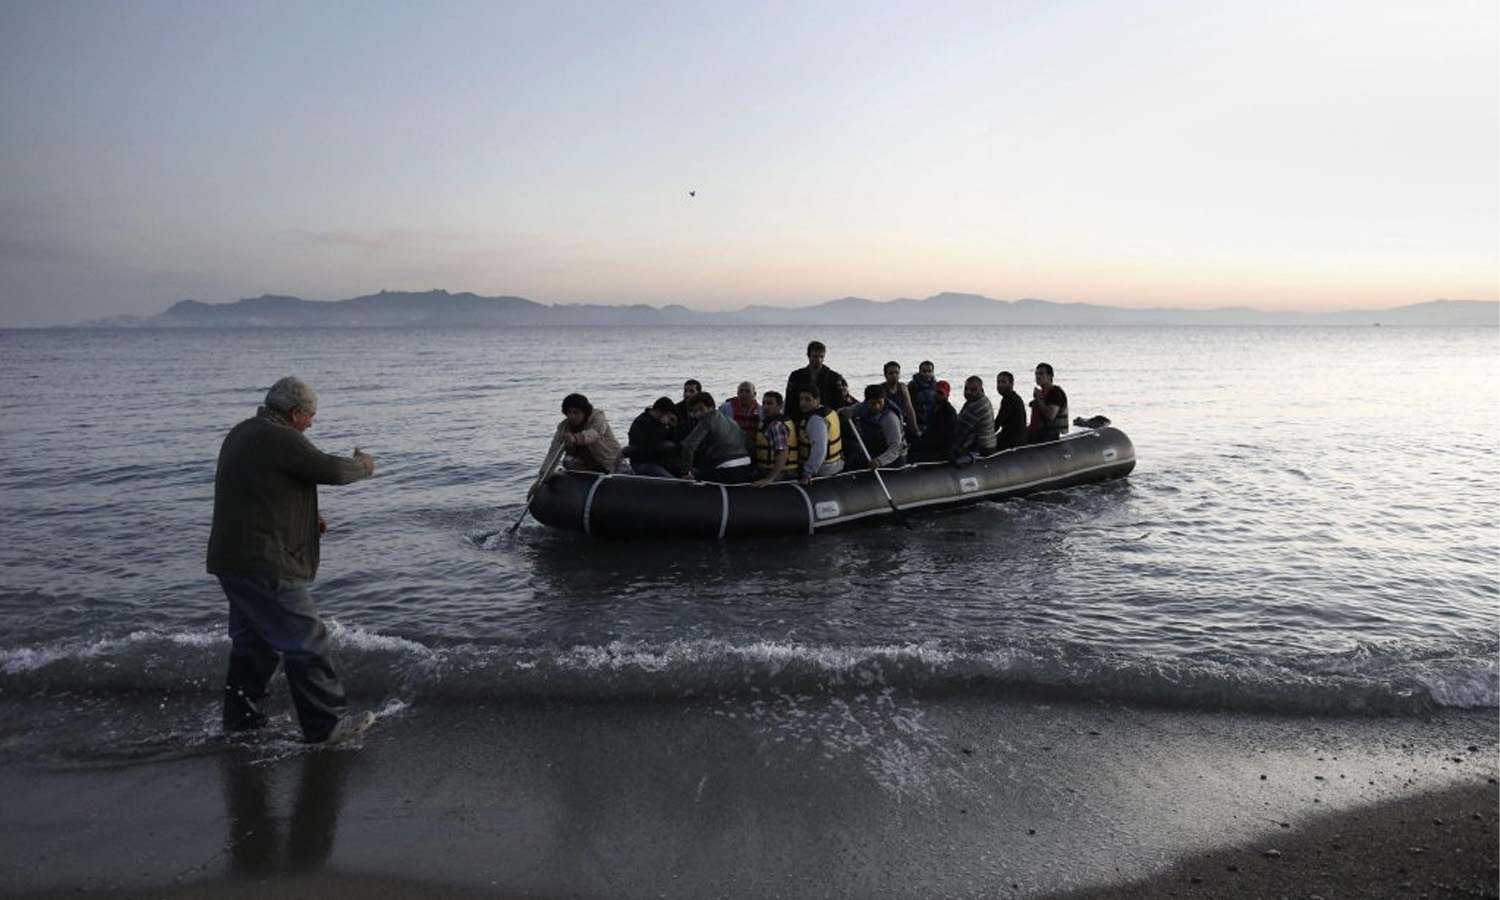 يصل لاجئون بينهم سوريون إلى السواحل اليونانية على بحر إيجة قادمين من تركيا بشكل متكرر (ansa)